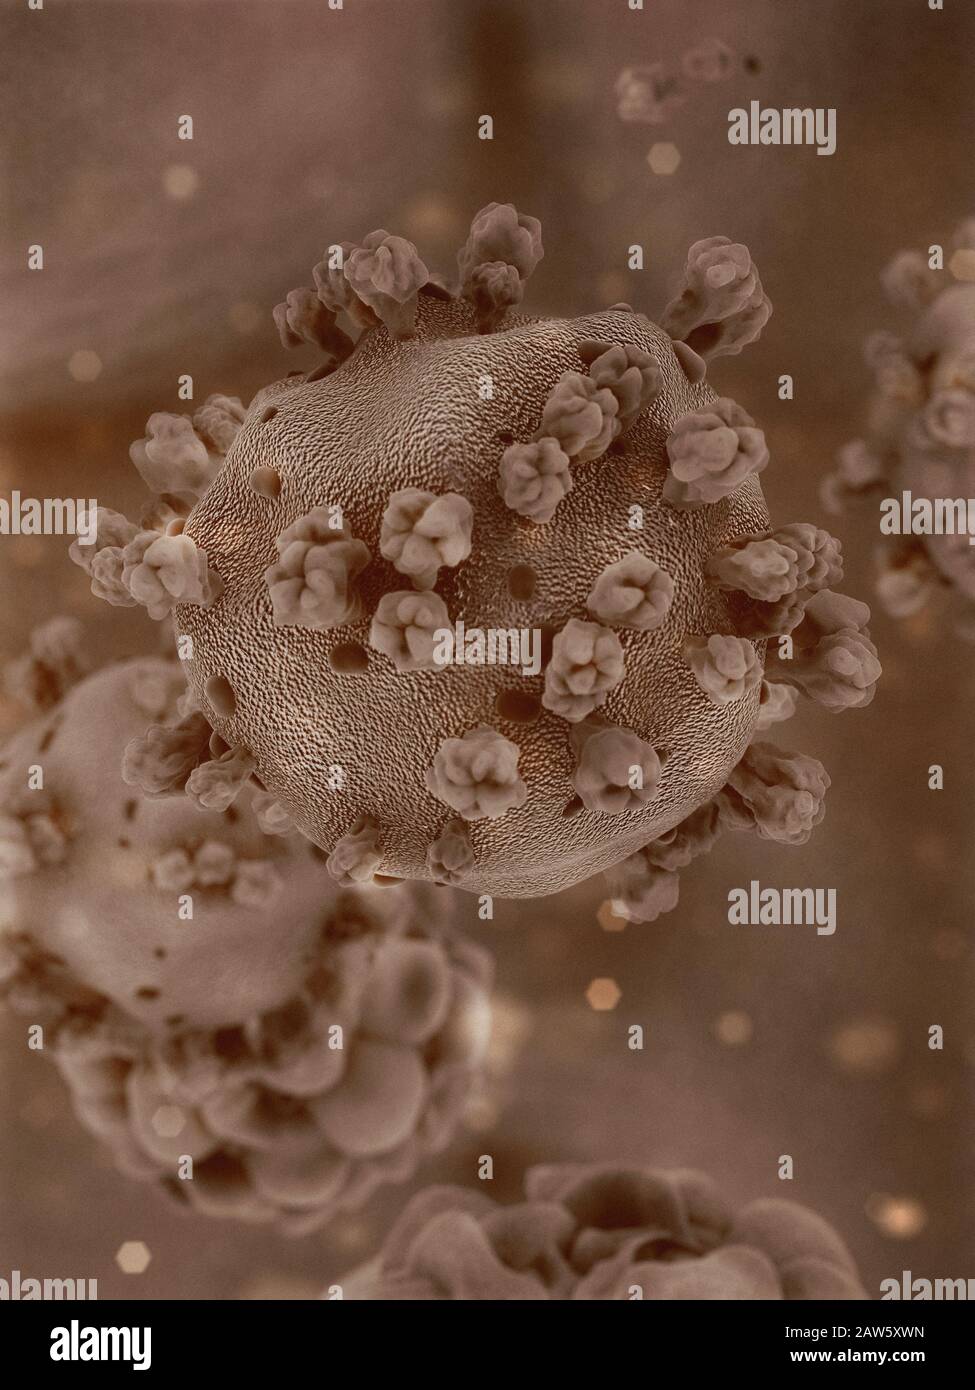 Wissenschaftliche Illustration des Coronavirus aus Wuhan, China. 3D-Rendering basierend auf mikroskopischen Bildern des Virus Stockfoto